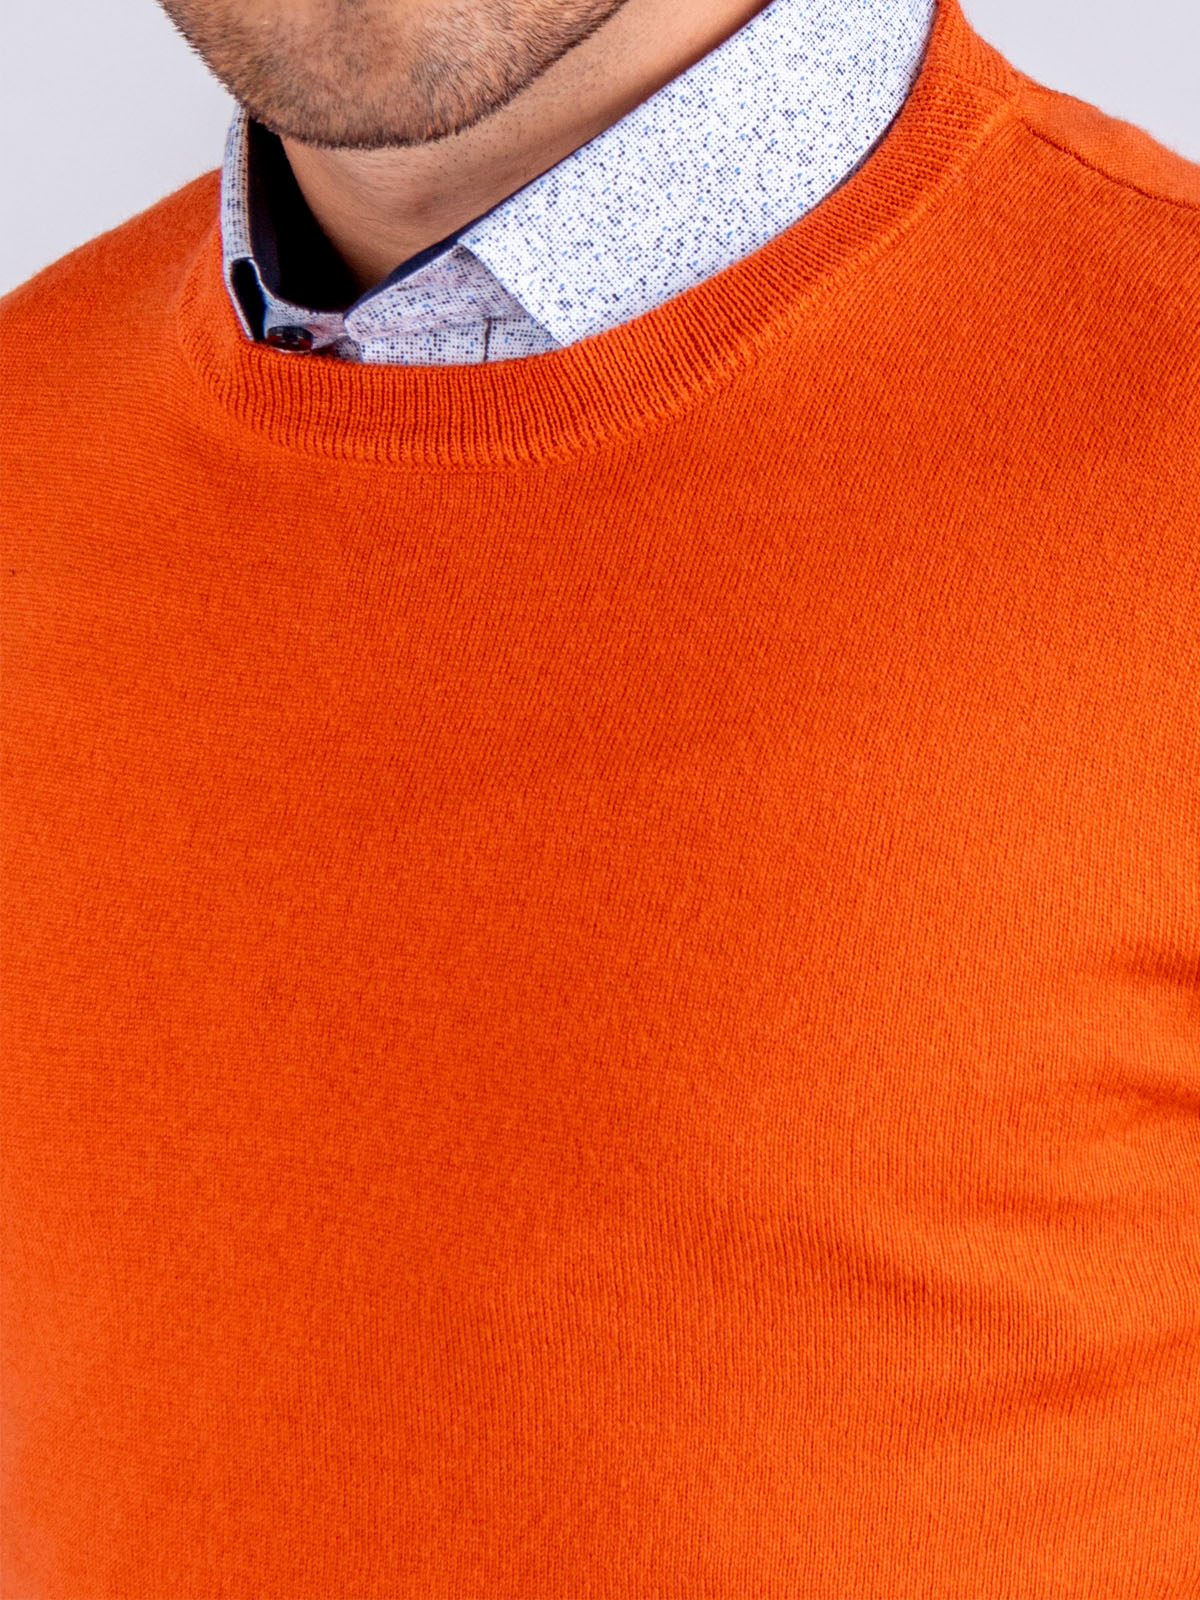 Πορτοκαλί πουλόβερ με μαλλί μερινό - 33082 € 42.74 img4